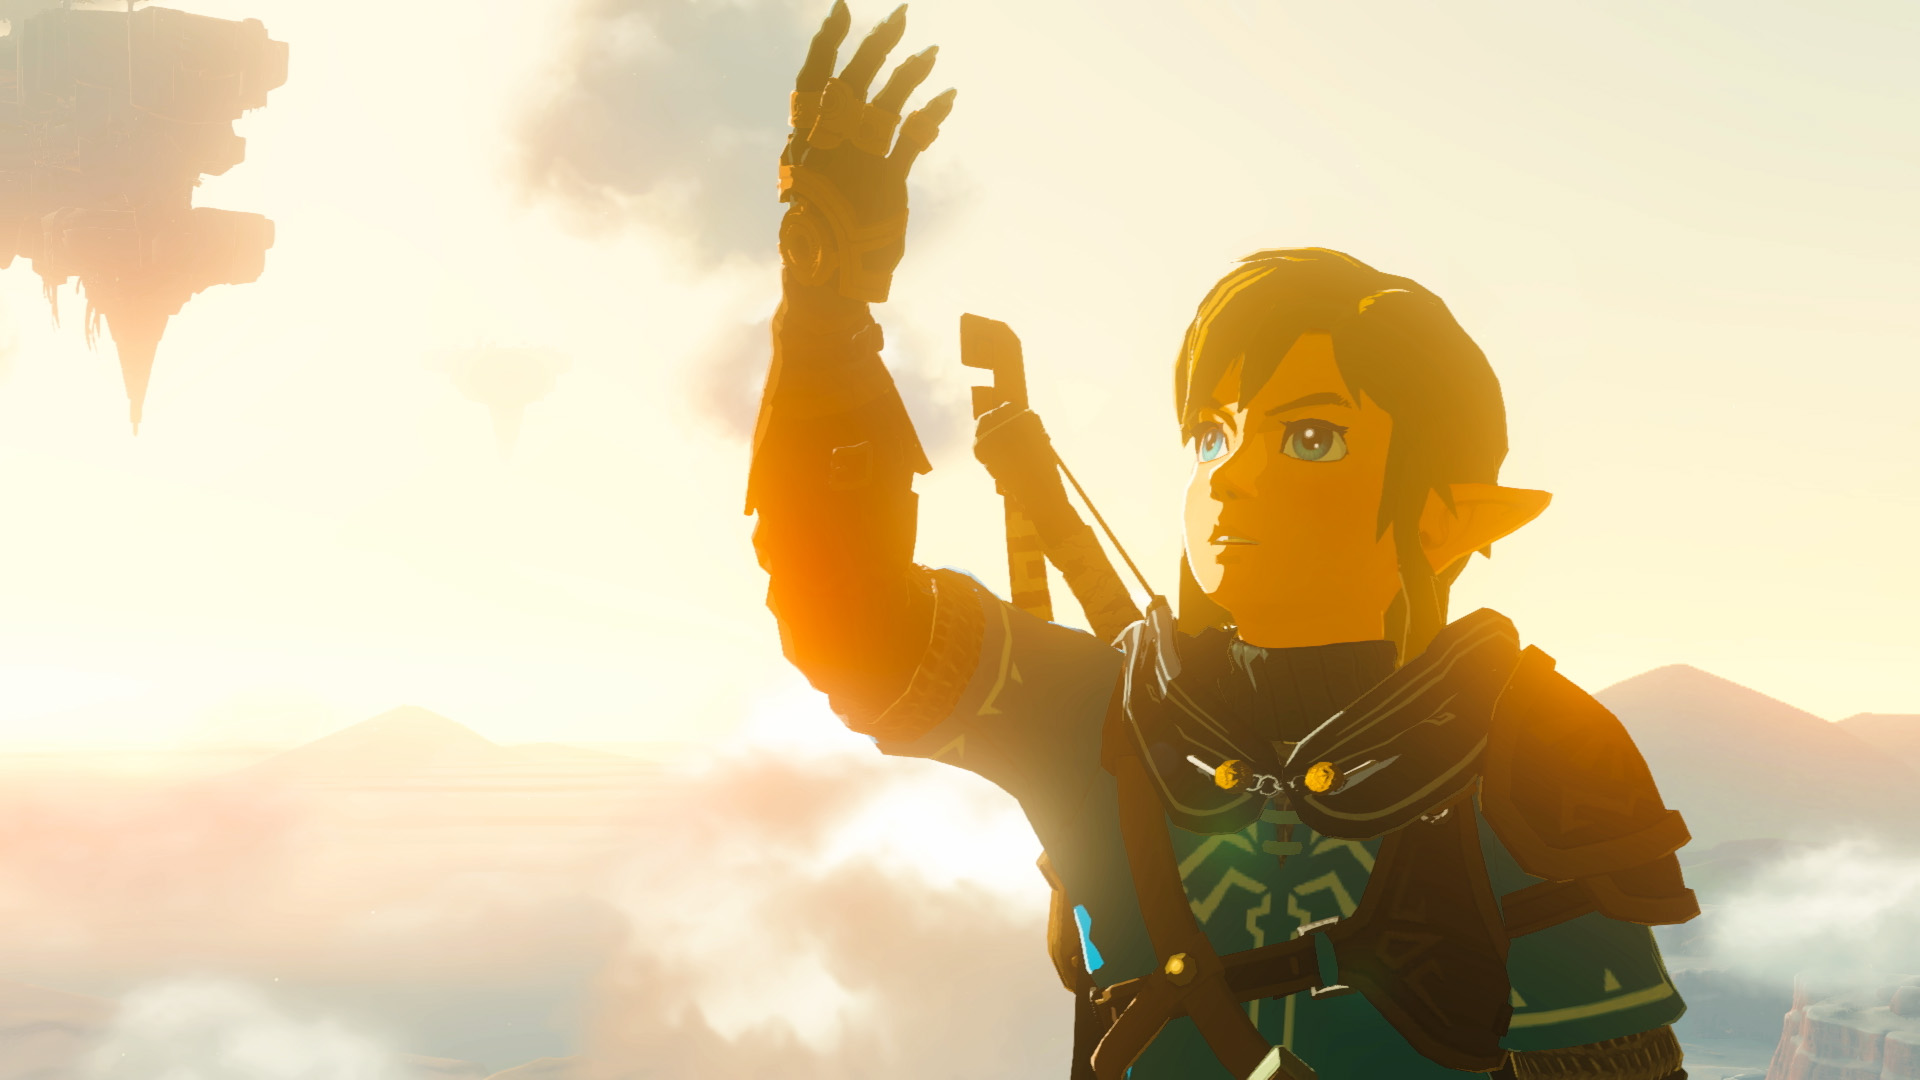 Nintendo's The Legend of Zelda Price Hike Opens Door for More